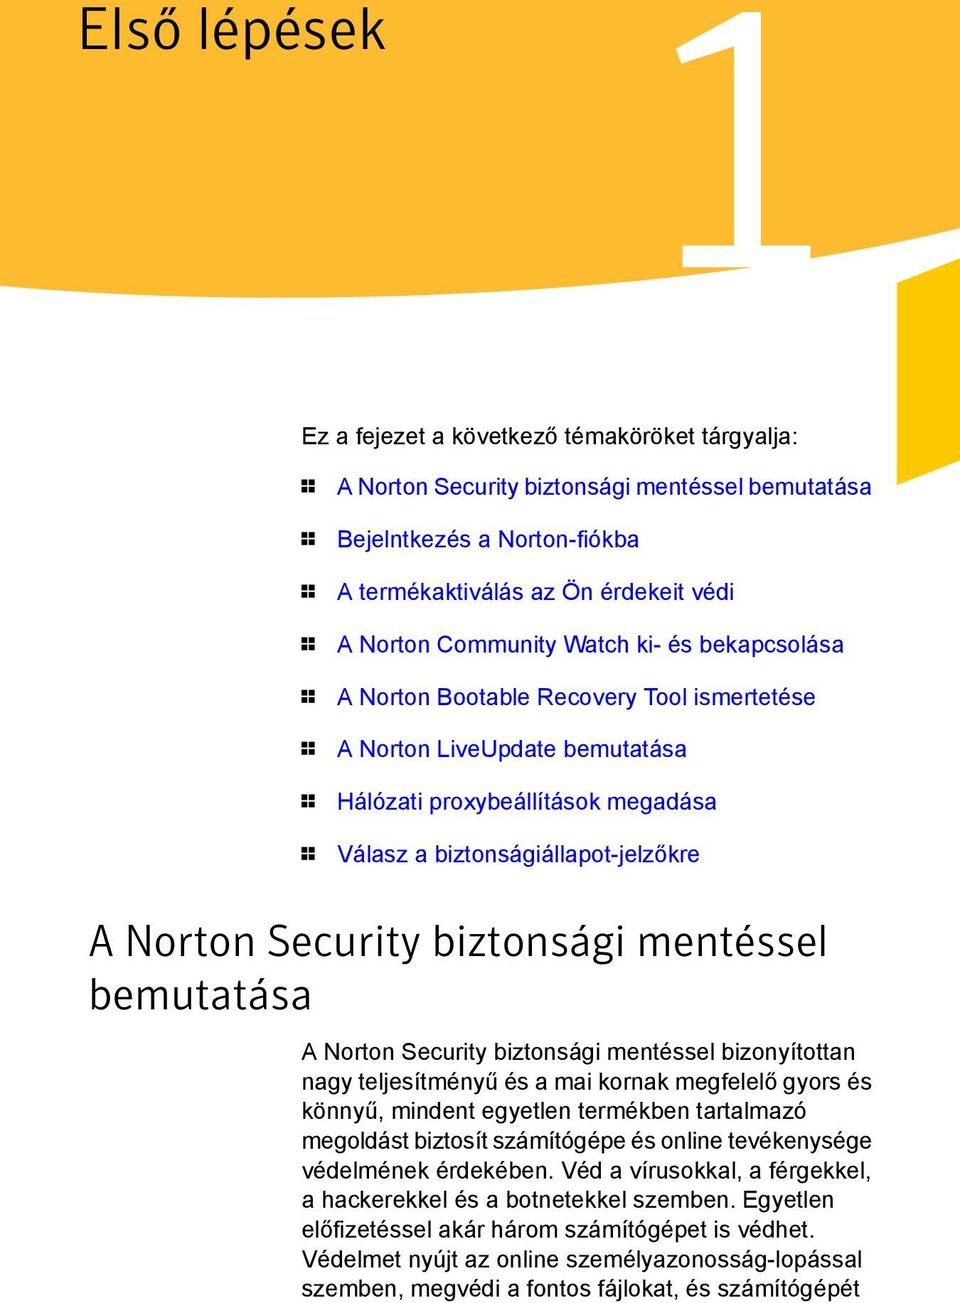 Security biztonsági mentéssel bemutatása A Norton Security biztonsági mentéssel bizonyítottan nagy teljesítményű és a mai kornak megfelelő gyors és könnyű, mindent egyetlen termékben tartalmazó